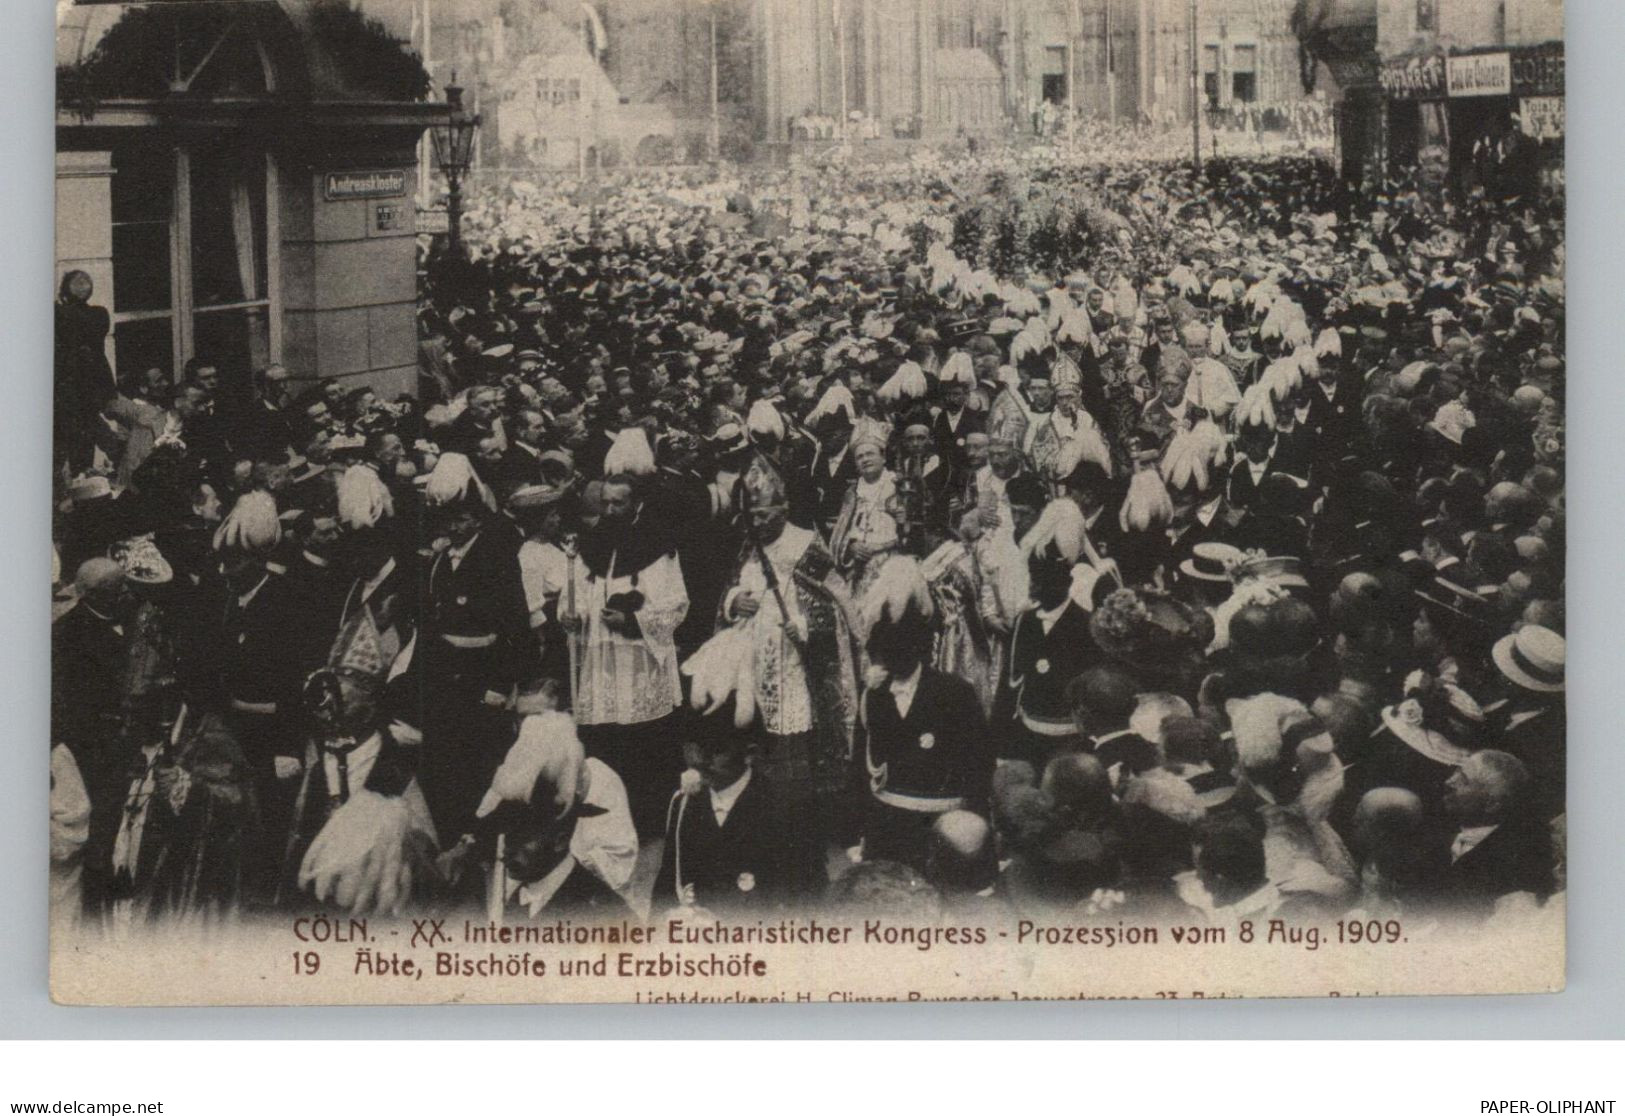 5000 KÖLN, Ereignis, Eucharistischer Kongress 1909, Äbte, Bischöfe, Erzbischöfe - Koeln